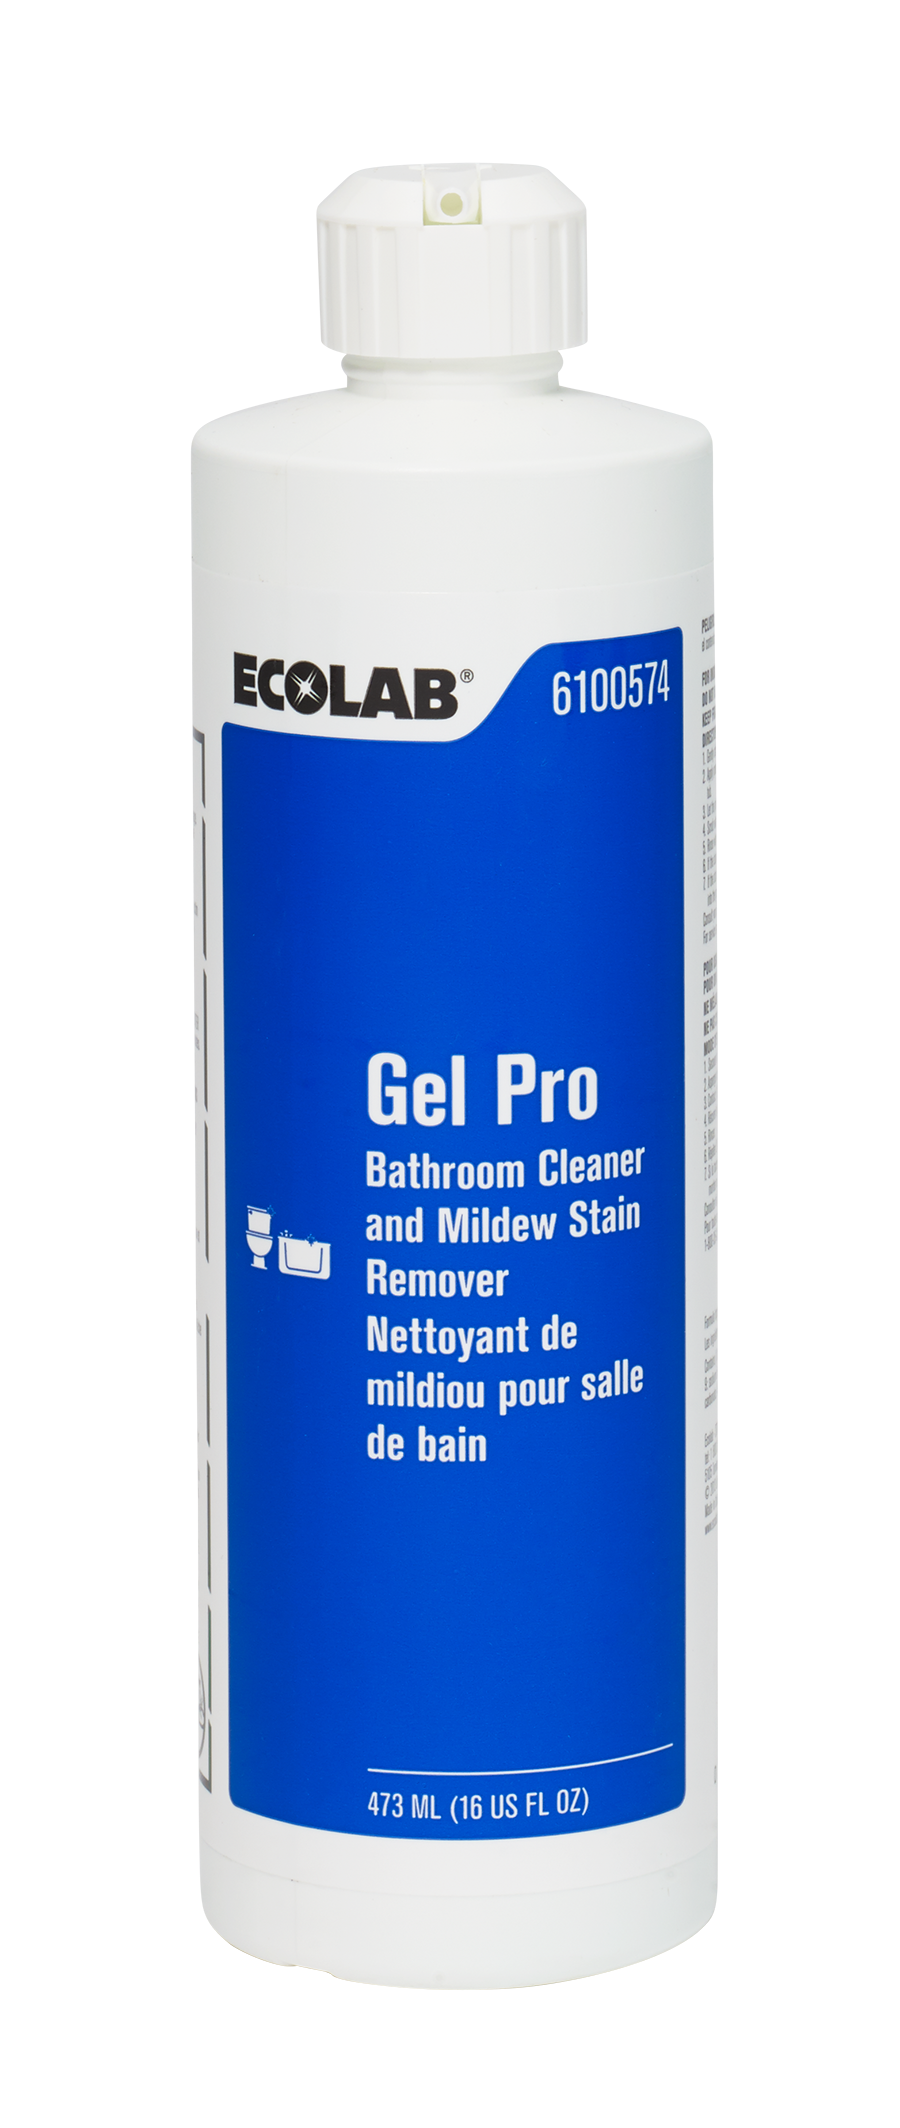 6100574 Gel Pro Bathroom Cleaner 16FLOZ.ashx?h=2128&w=900&la=en&hash=4FDEBA1436389F79AD3FCF6CA73ADF16